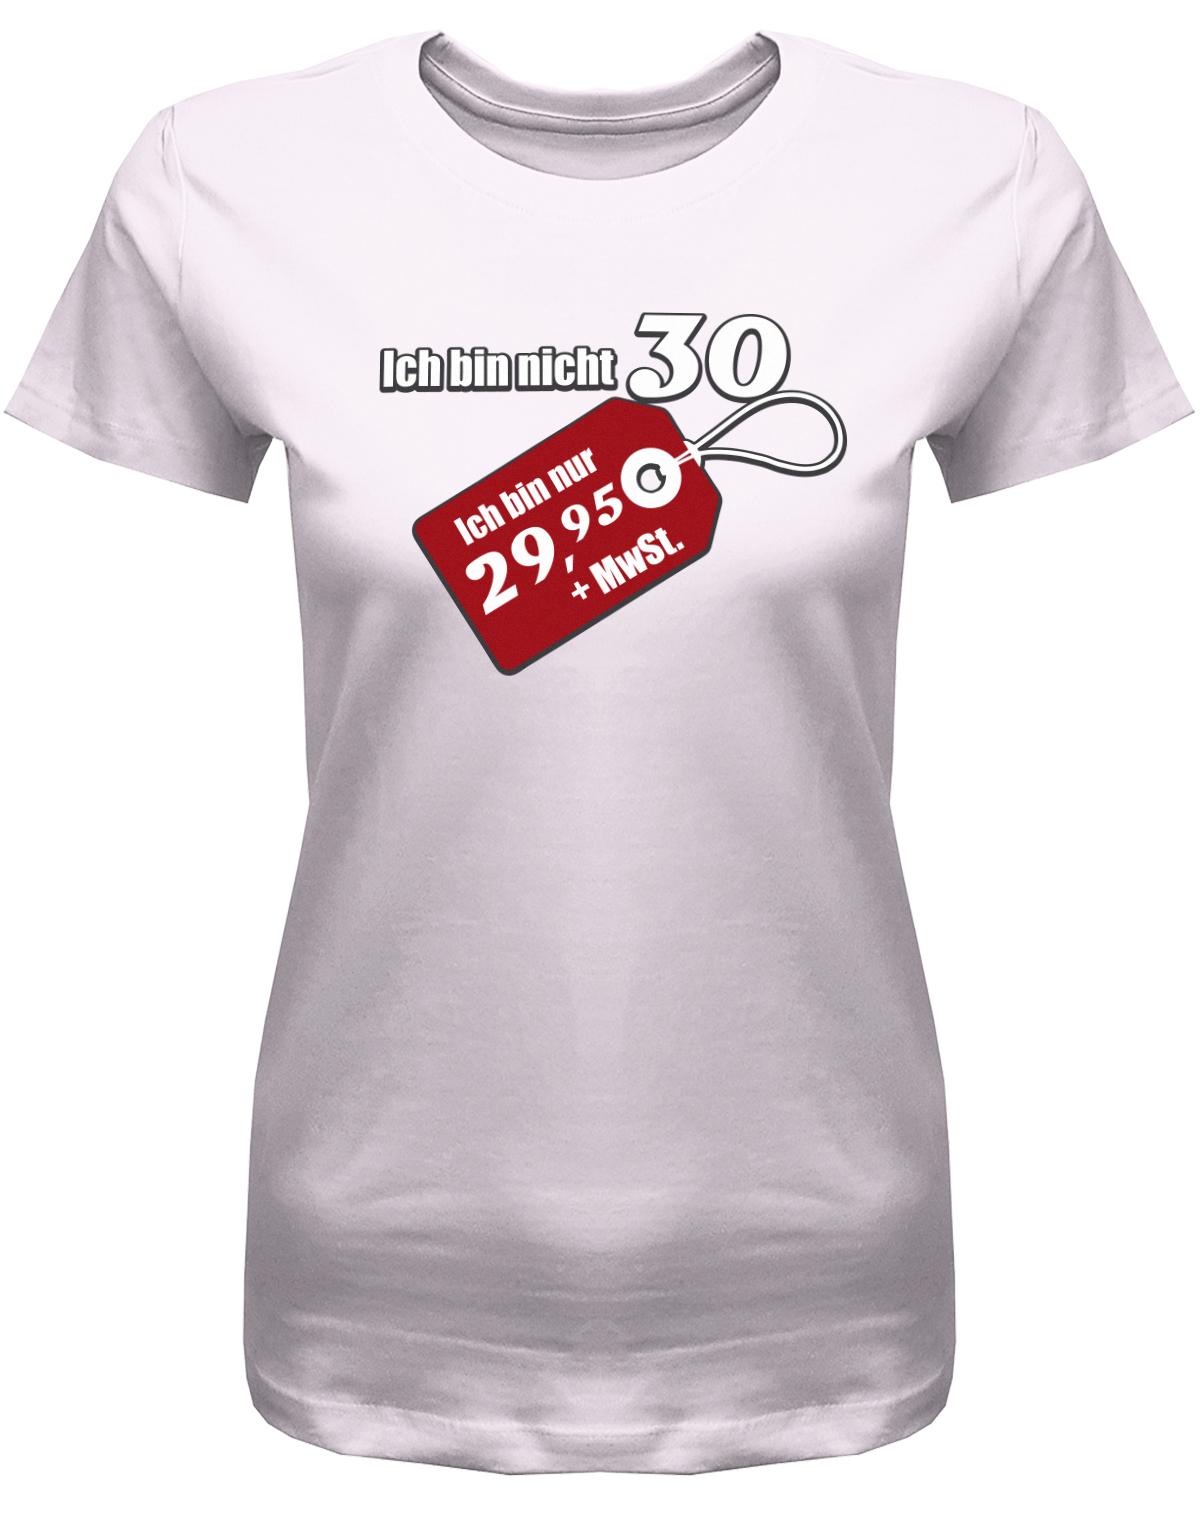 Lustiges T-Shirt zum 30. Geburtstag für die Frau Bedruckt mit Ich bin nicht 30 ich bin 29,95 plus MwSt. Sonderpreis Etikett. Rosa